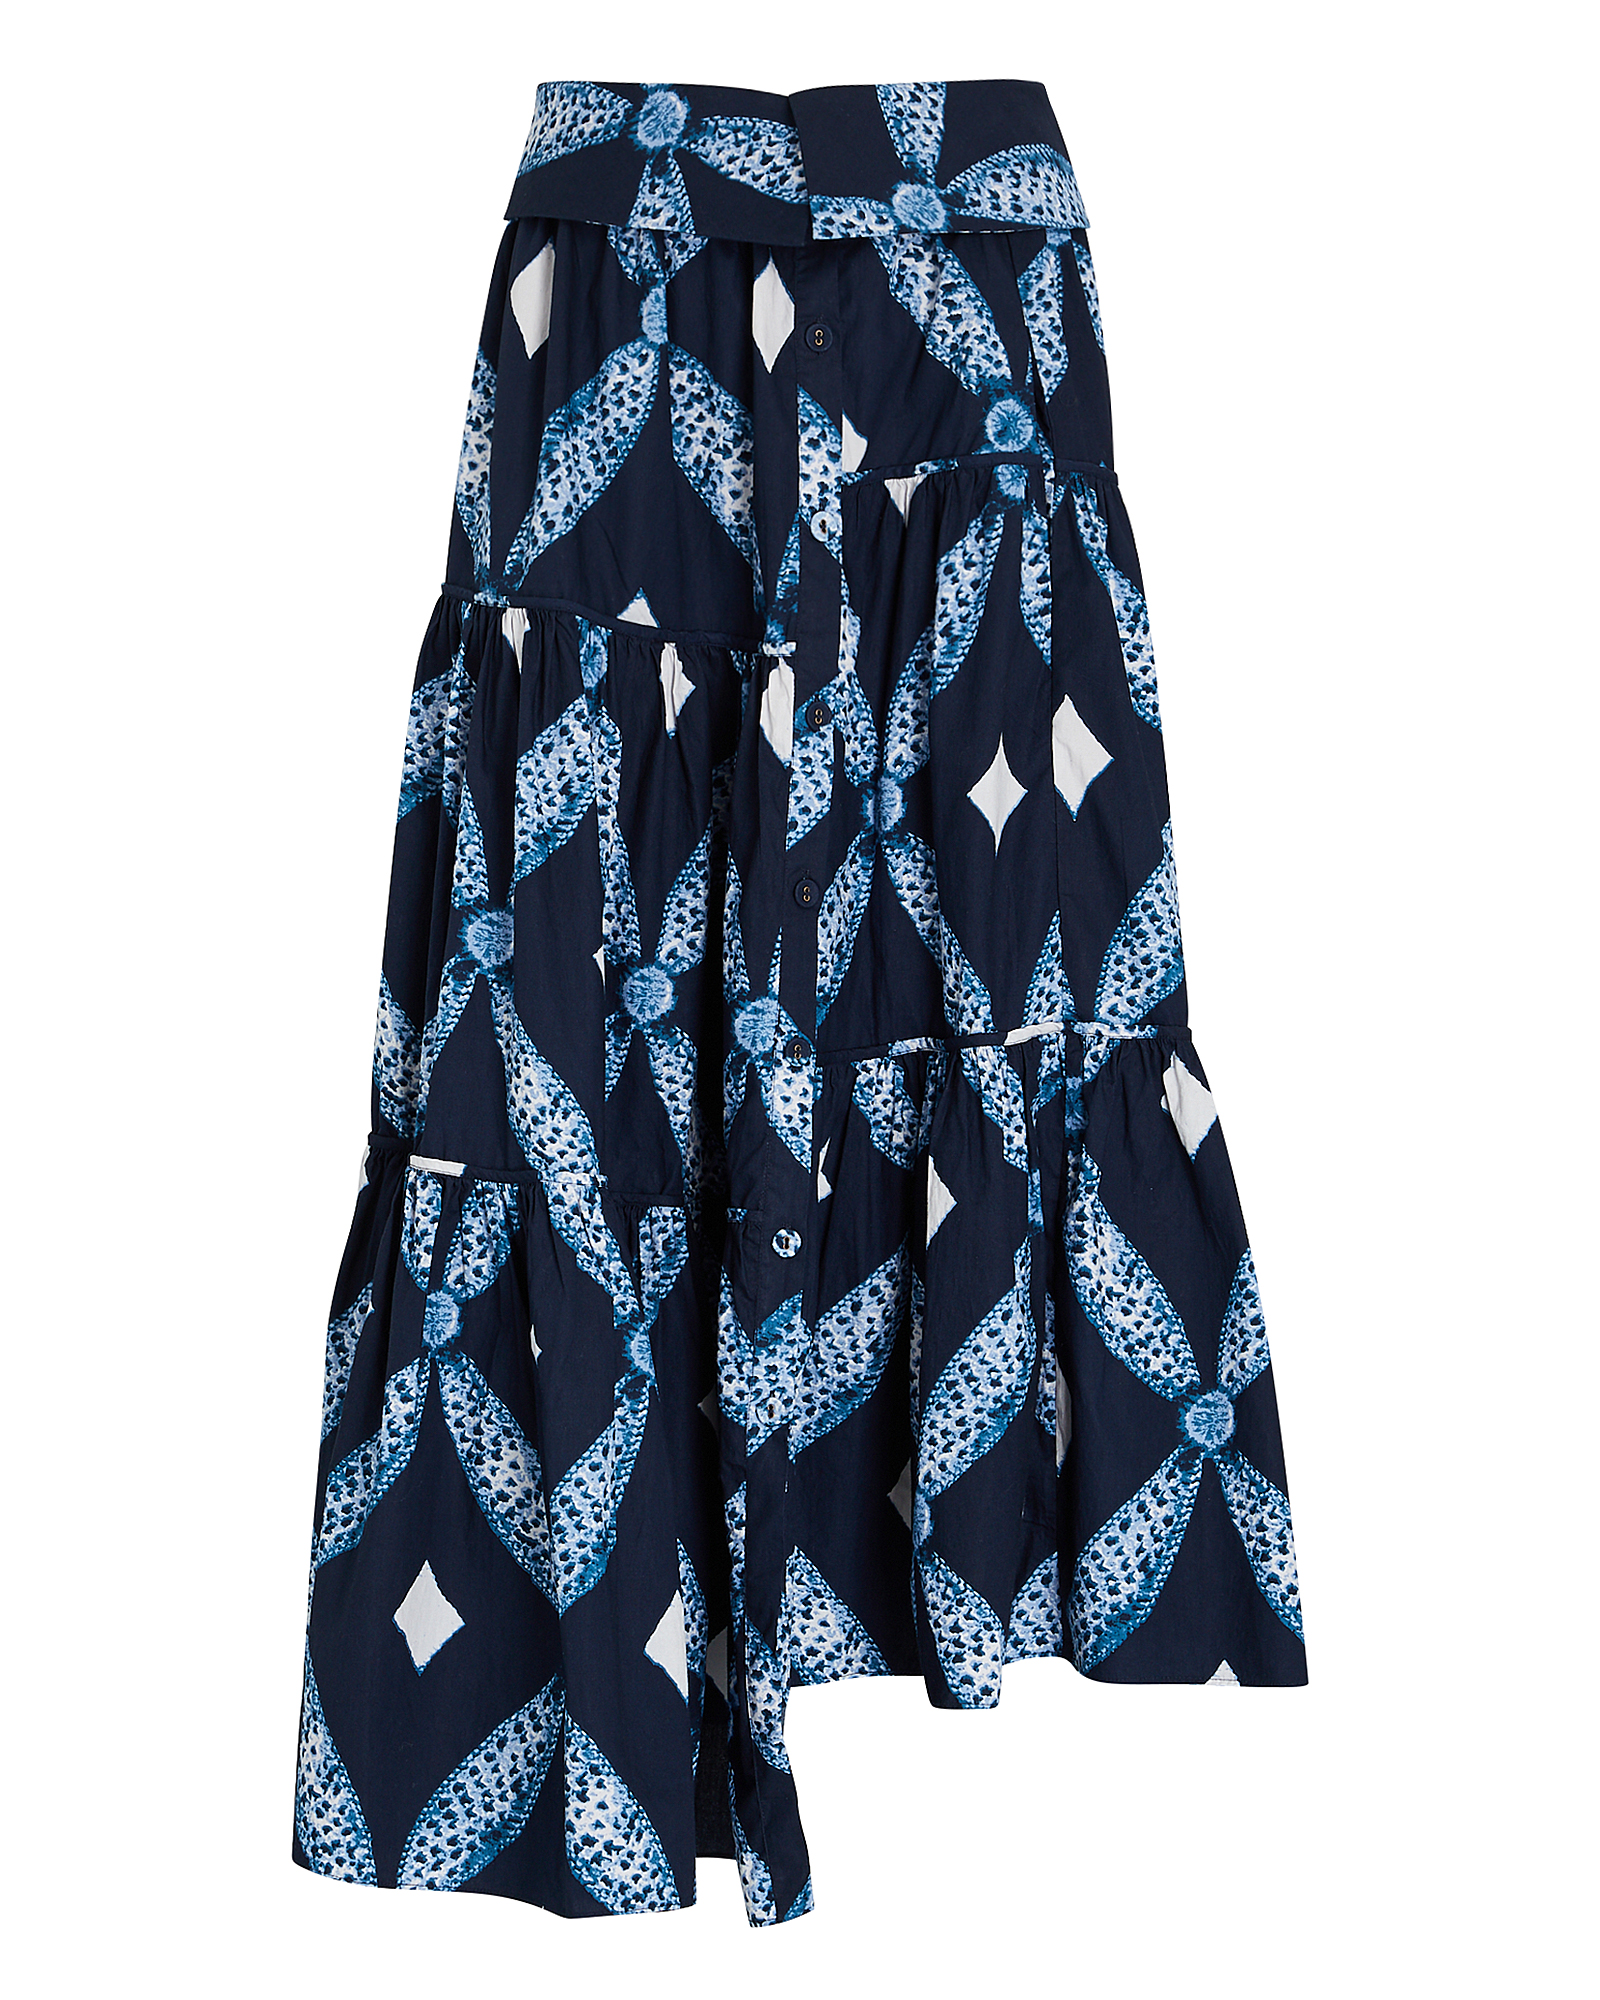 Ulla Johnson Eiko Printed Asymmetric Skirt | INTERMIX®